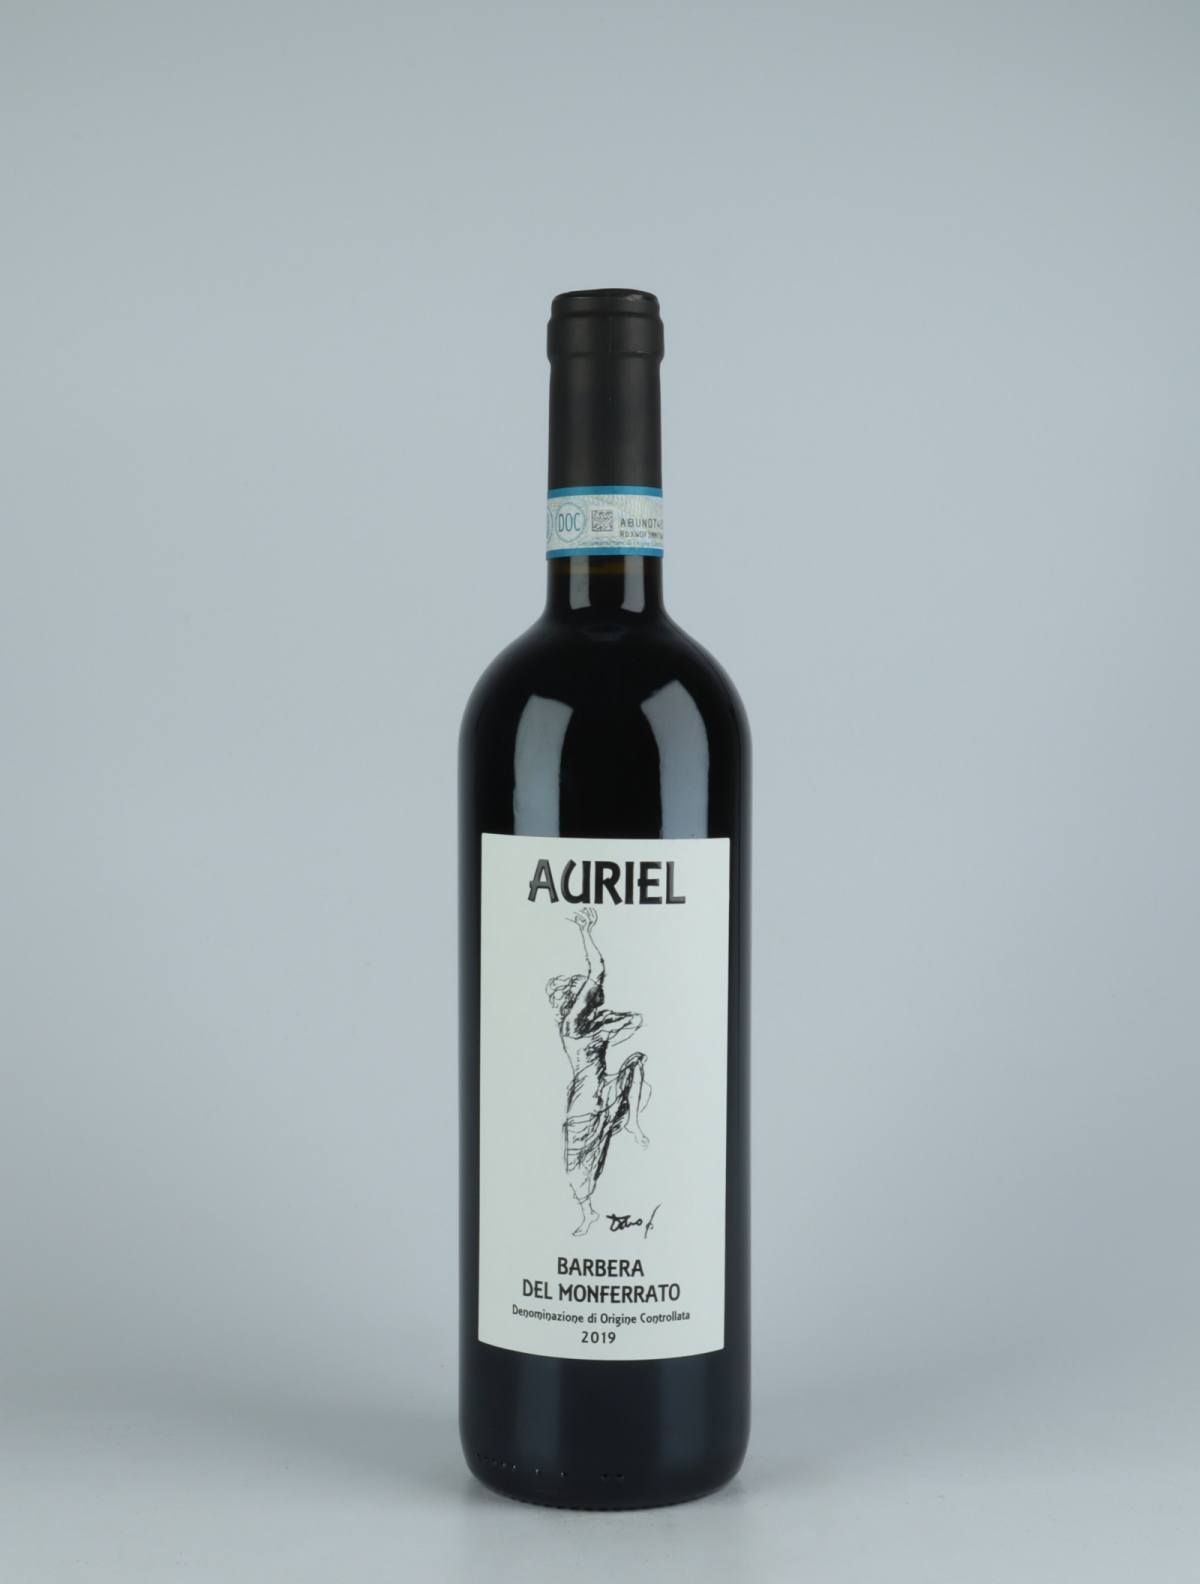 A bottle 2019 Barbera del Monferrato Red wine from Auriel, Piedmont in Italy